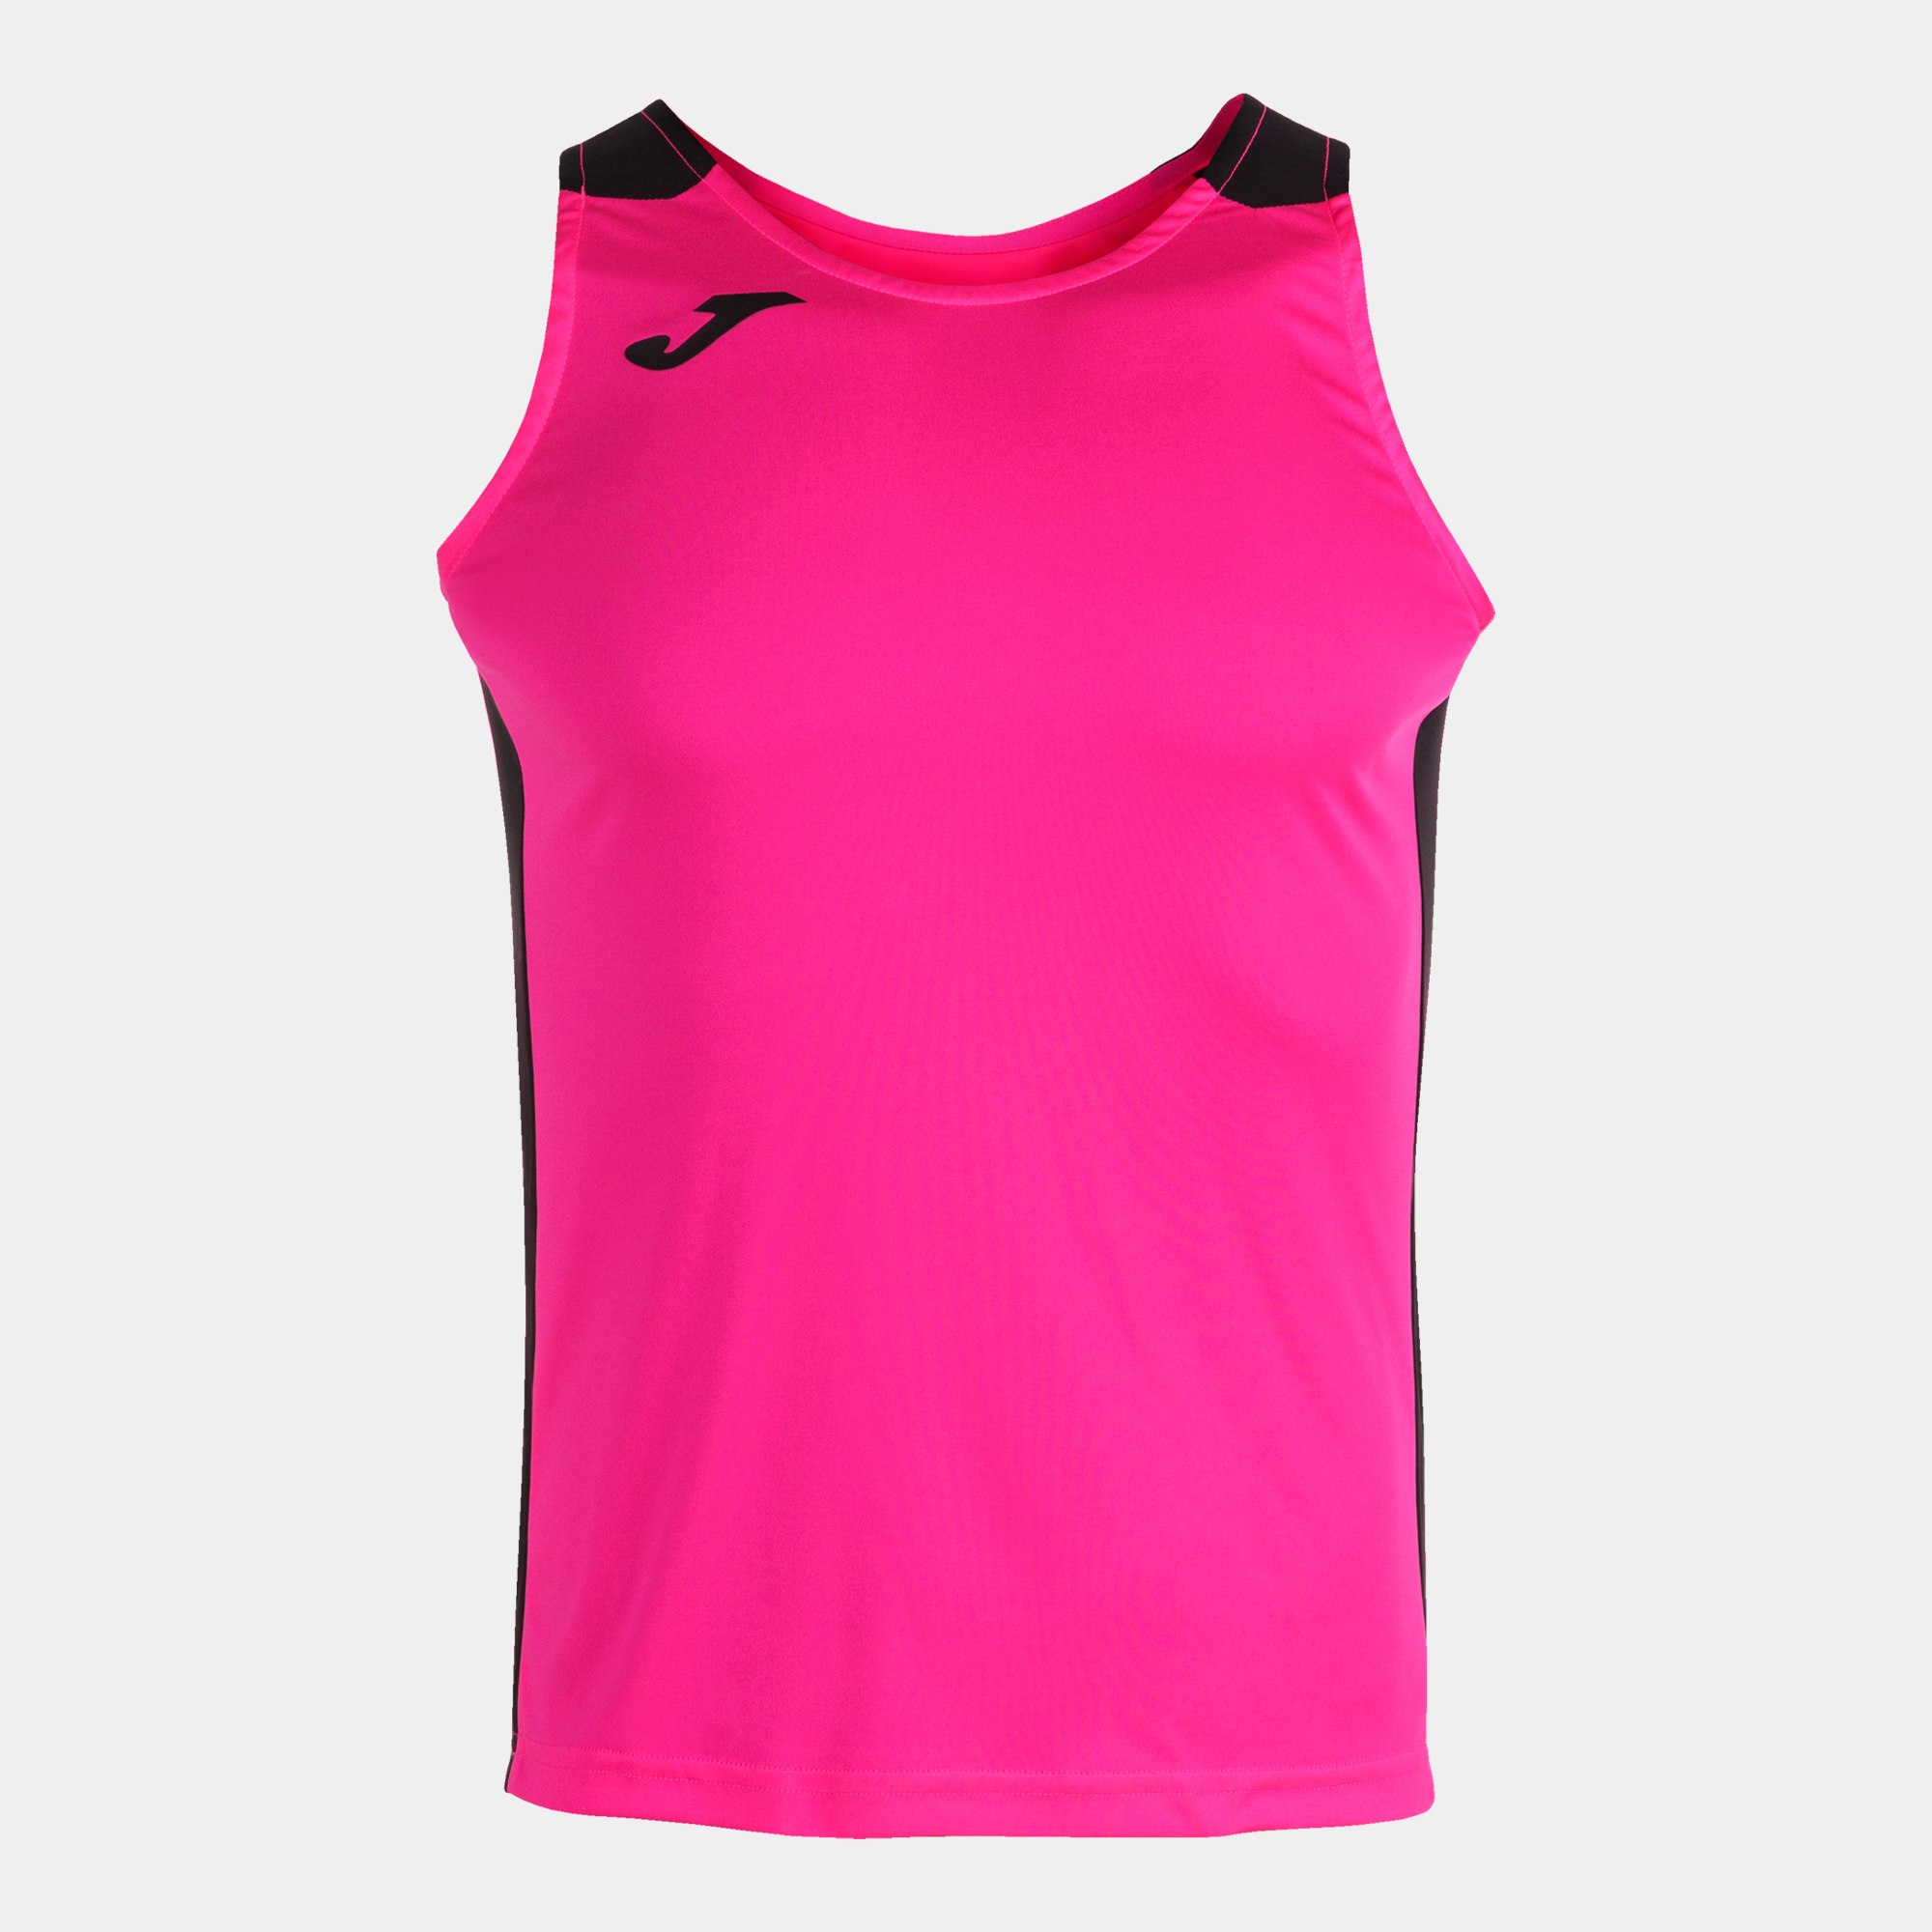 Camiseta Tirantes Joma Record Ii Rosa Flúor Negro - rosa-fluor - 